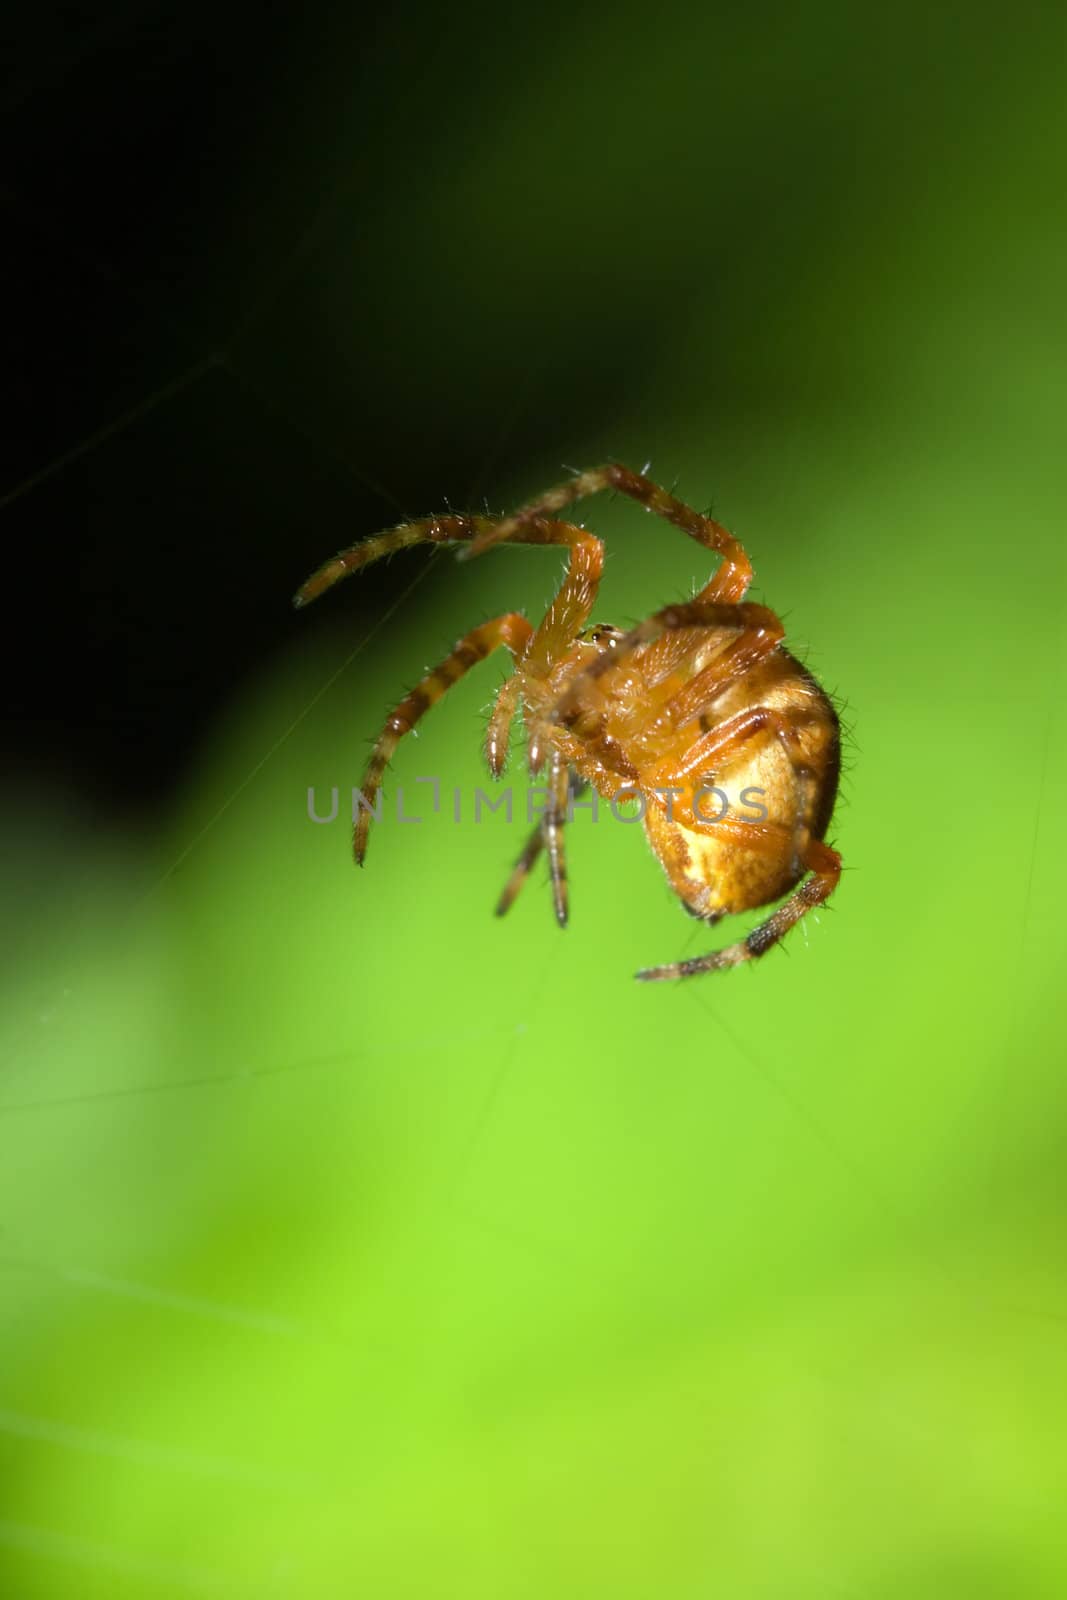 Female Cobweb Spider by Coffee999